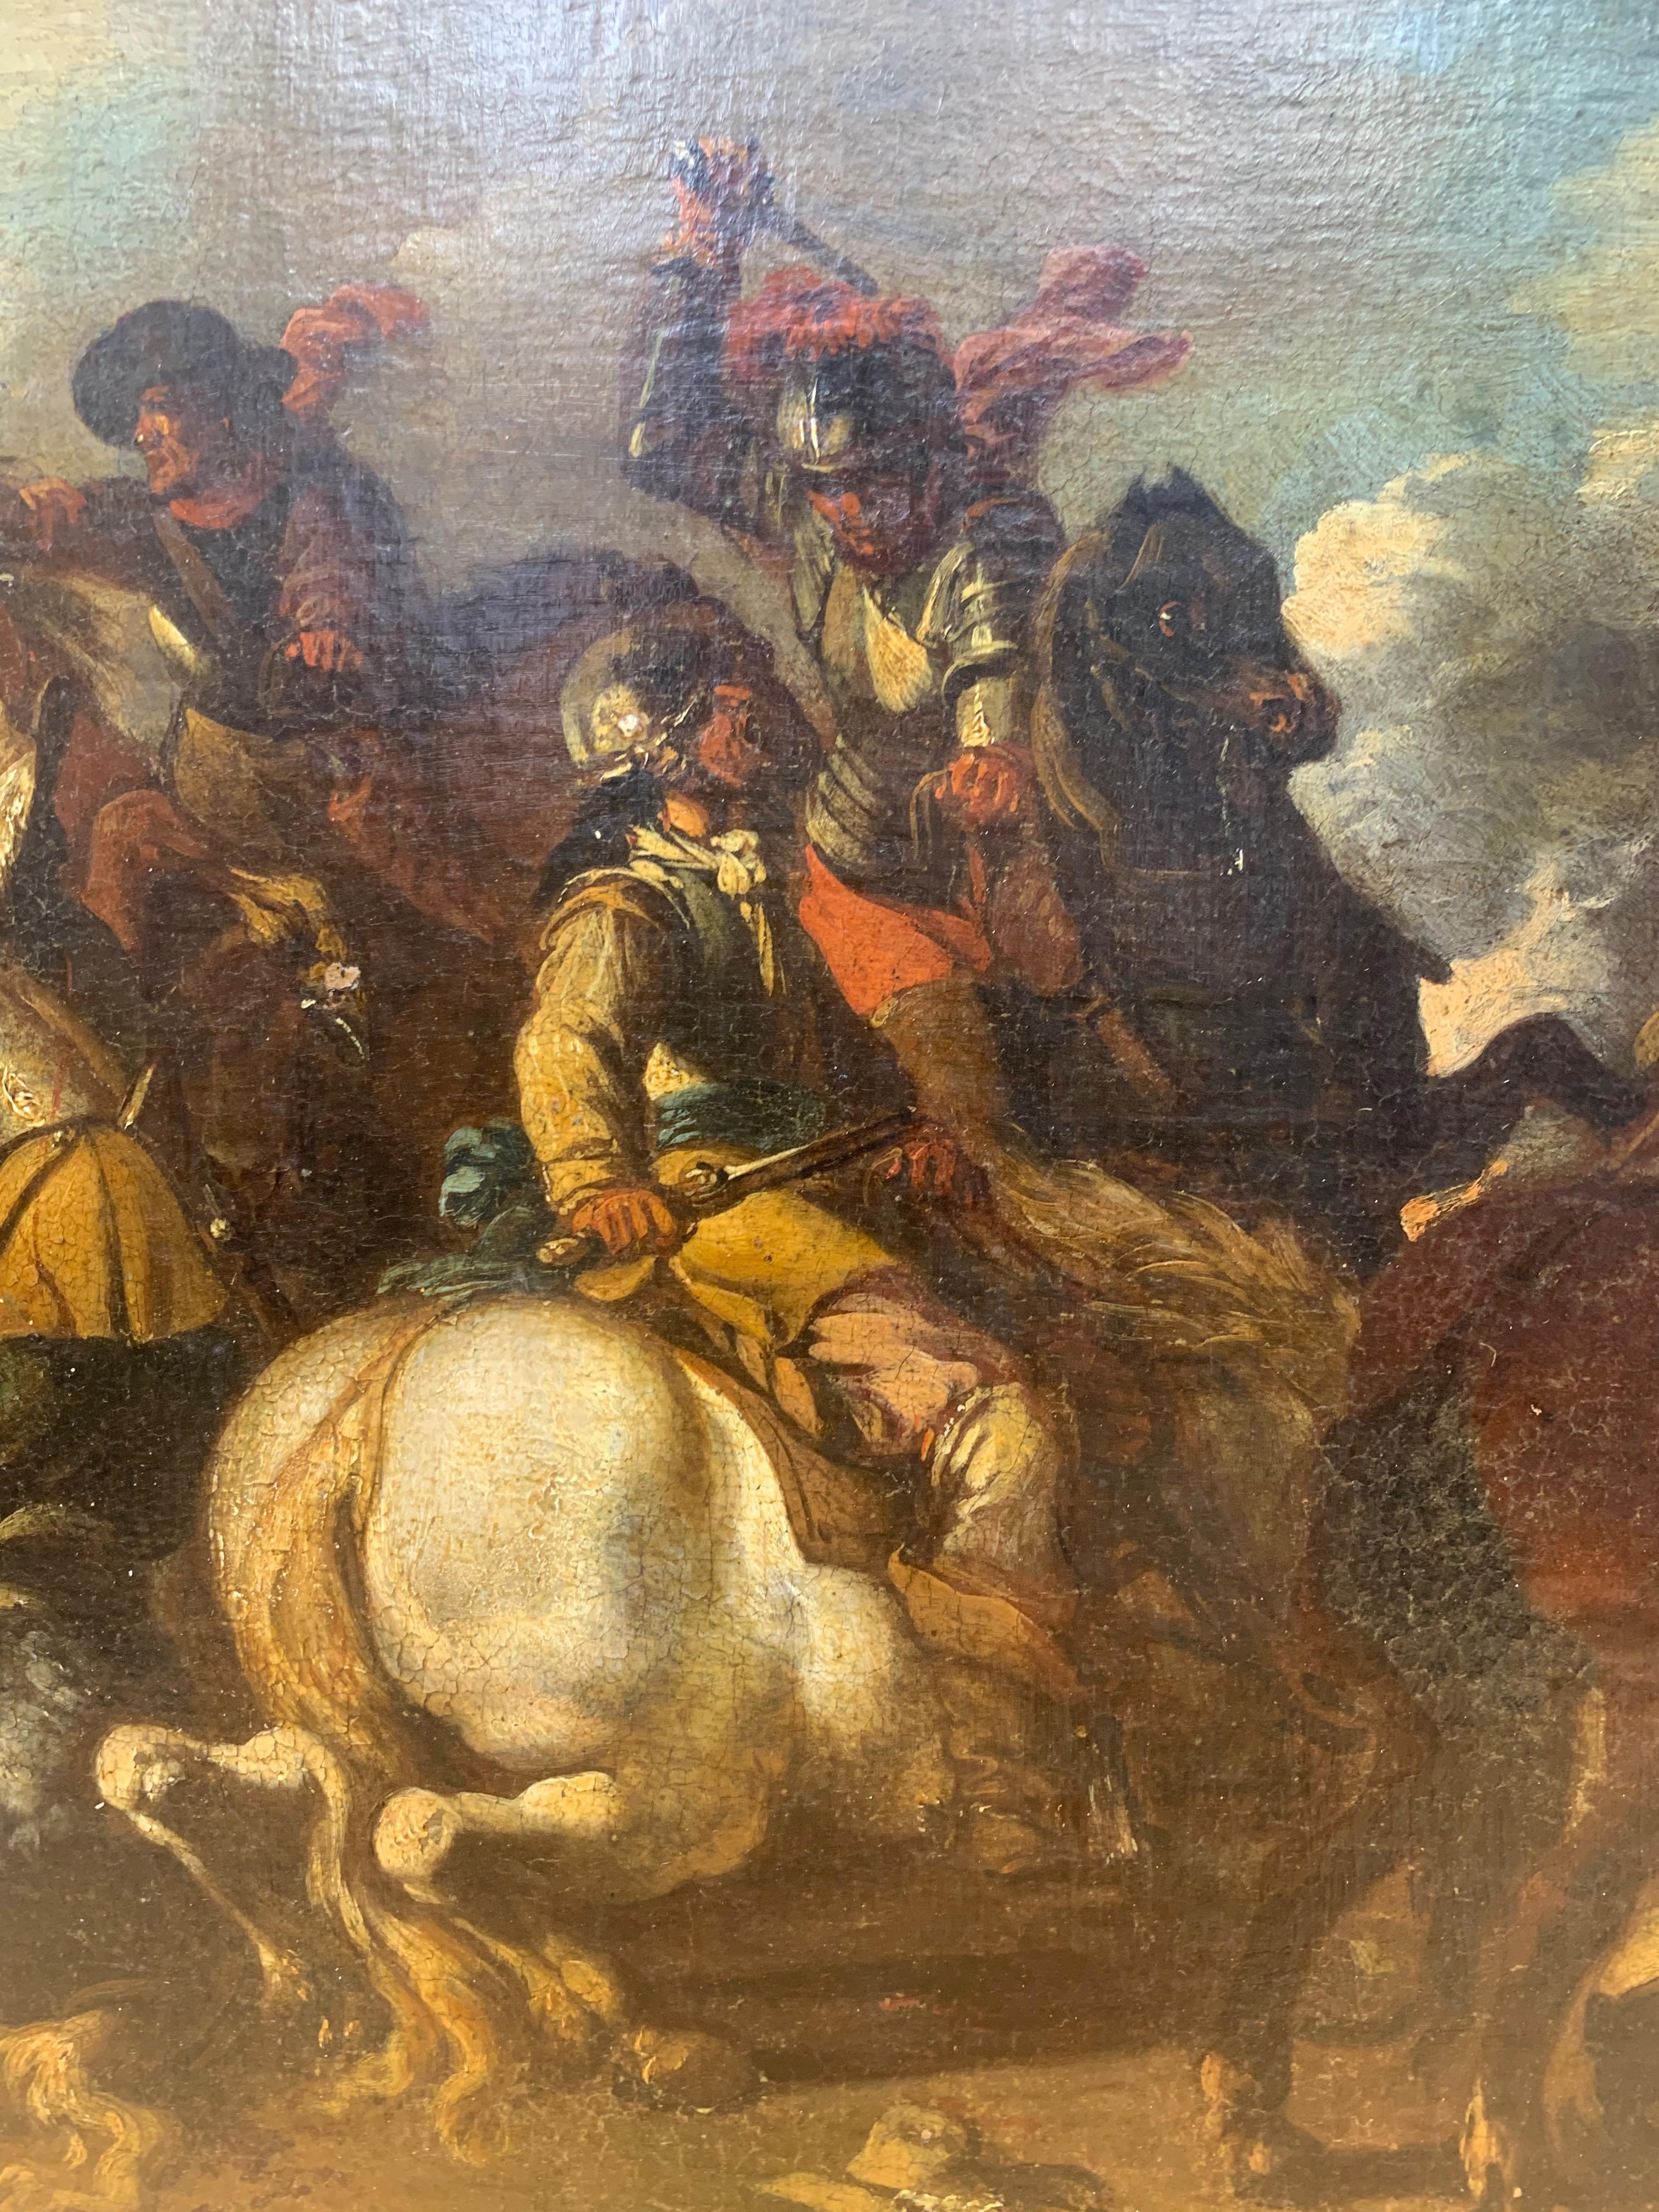 A battle scene by Jacques Courtois dit le Bourguignon.

